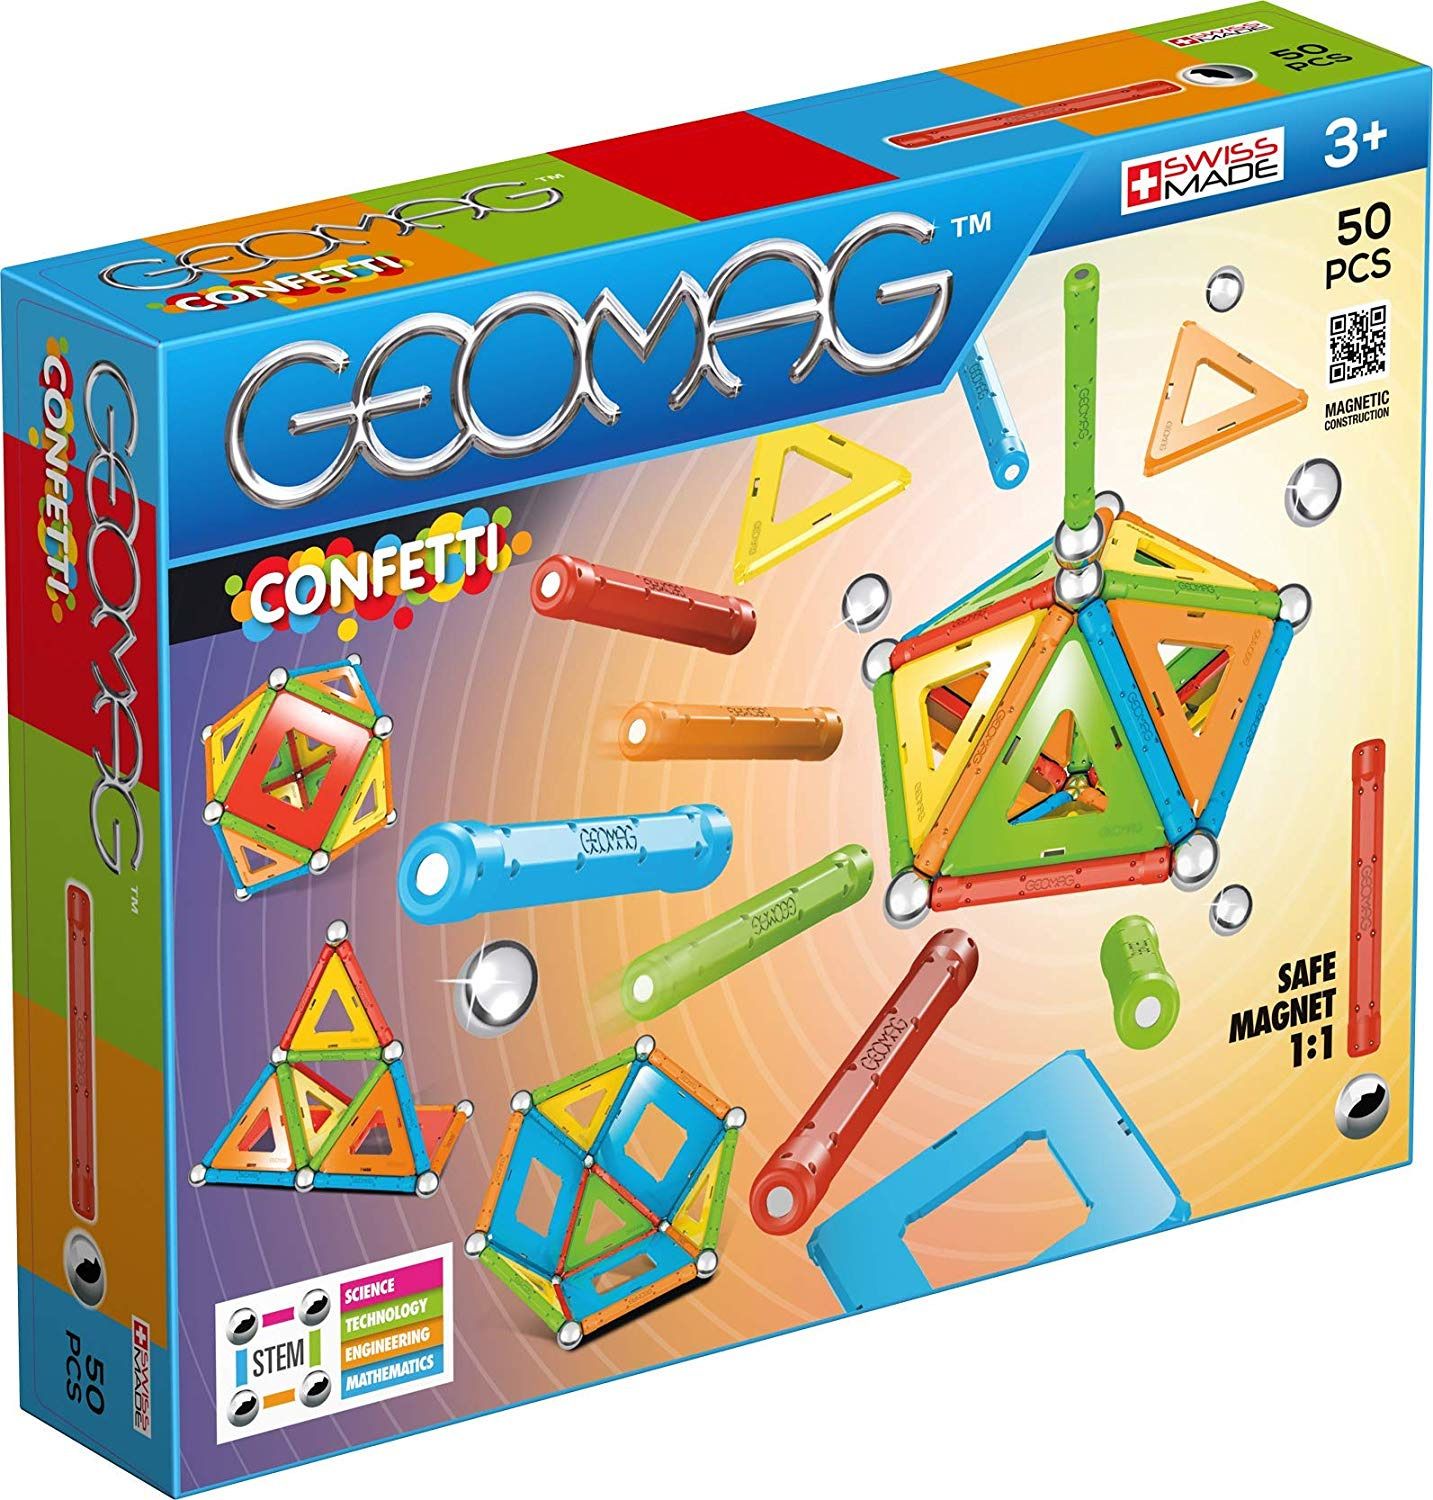   Geomag Confetti, 352